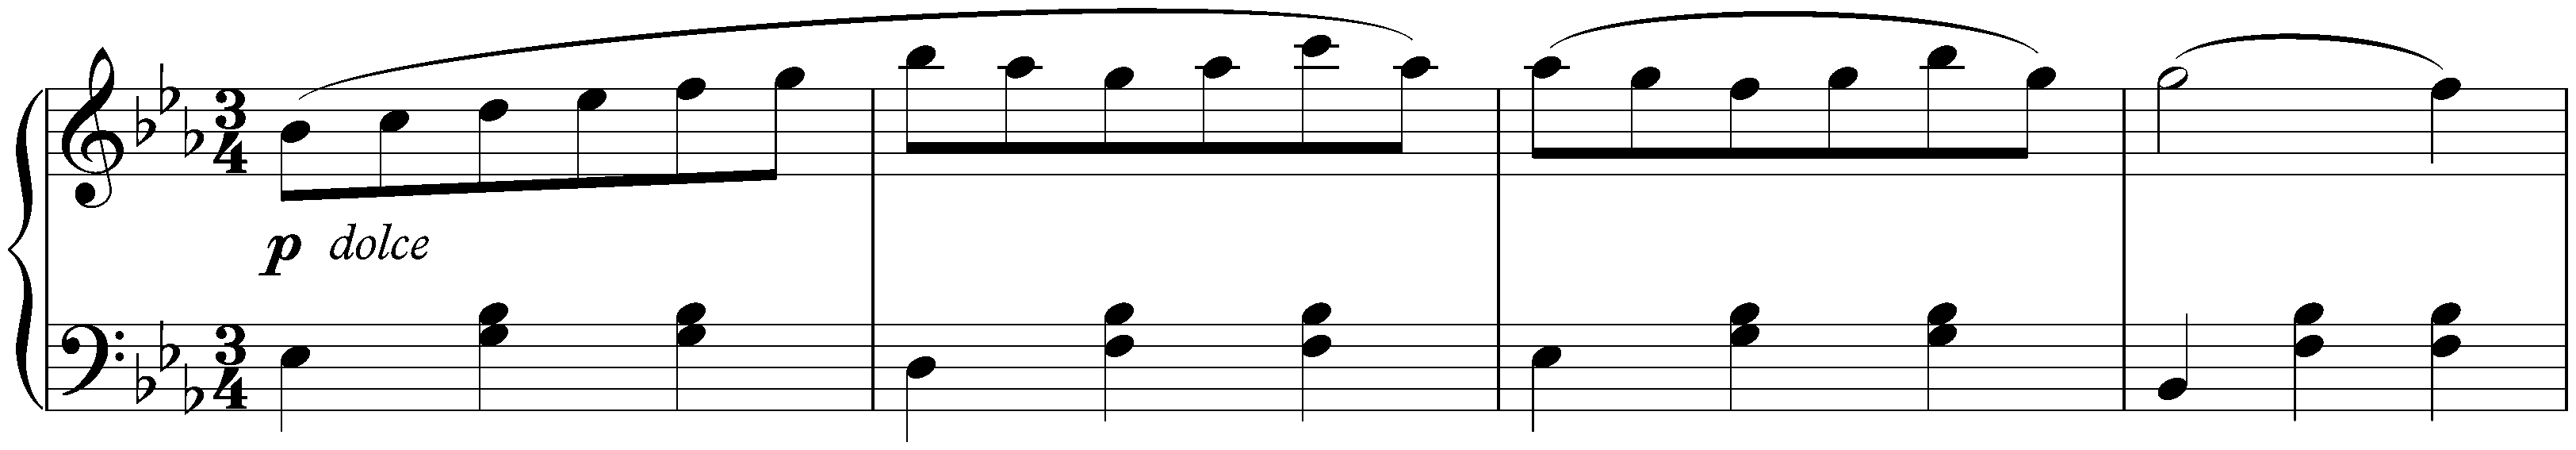 Waltz in E-flat major, WoO 84